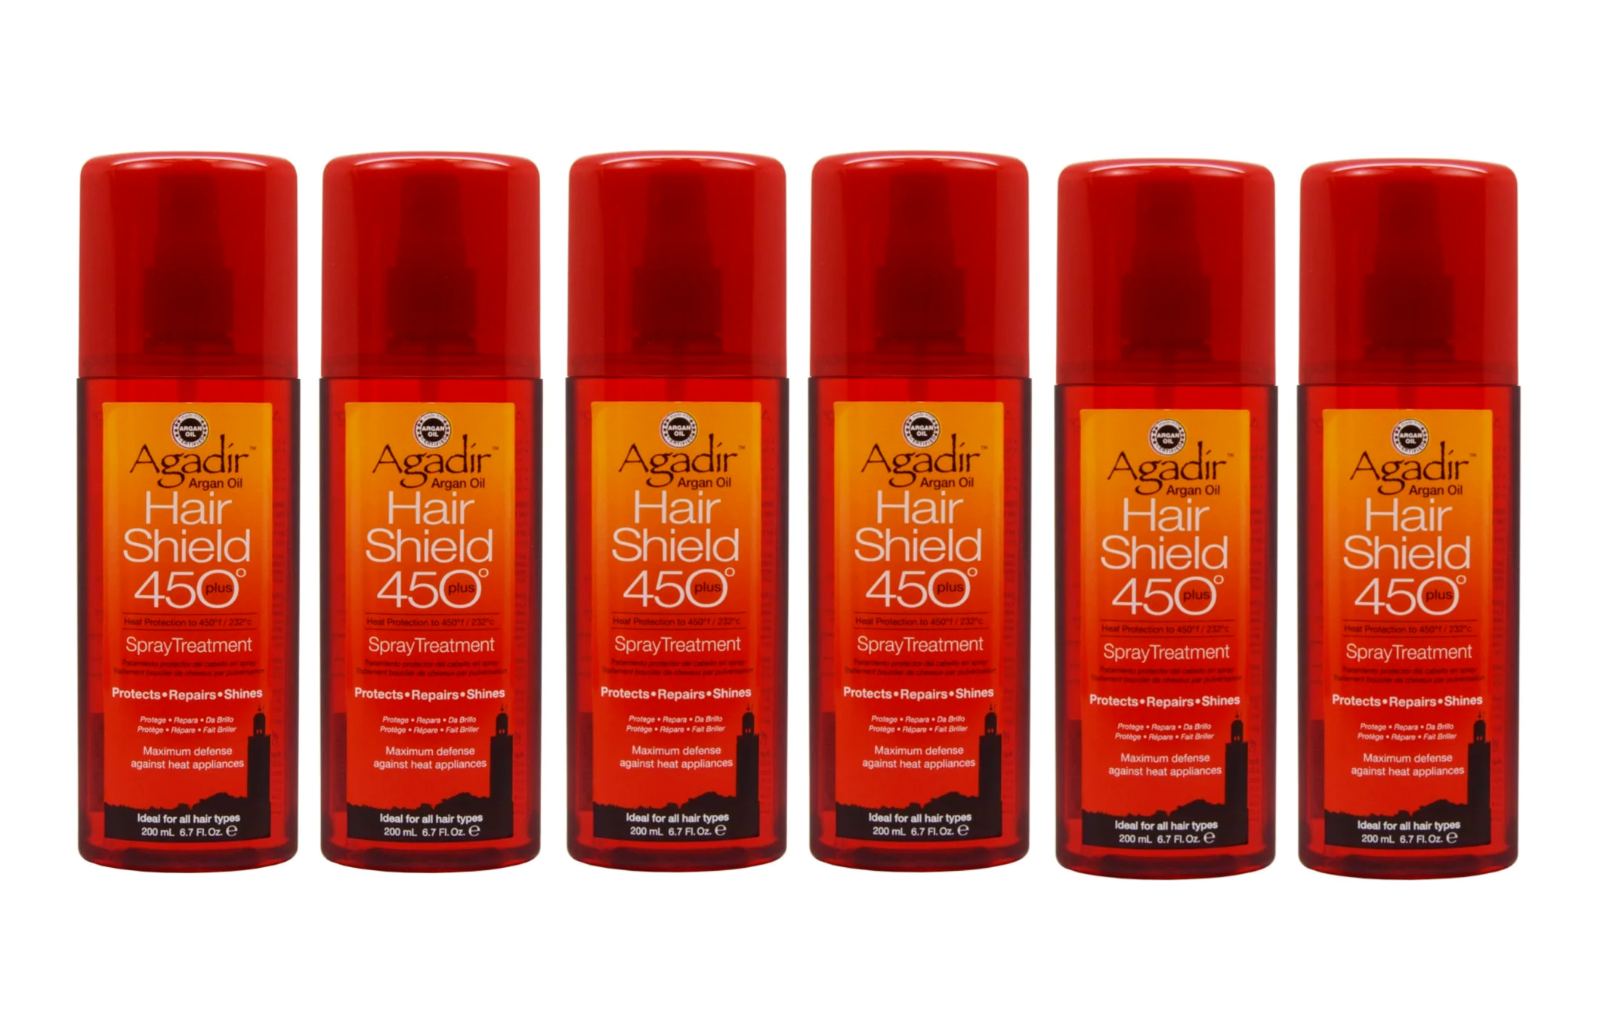 Agadir Argan Oil Hair Shield 450 Plus Spray Treatment, 6.7 fl. oz. (Pack of 6) - $98.84